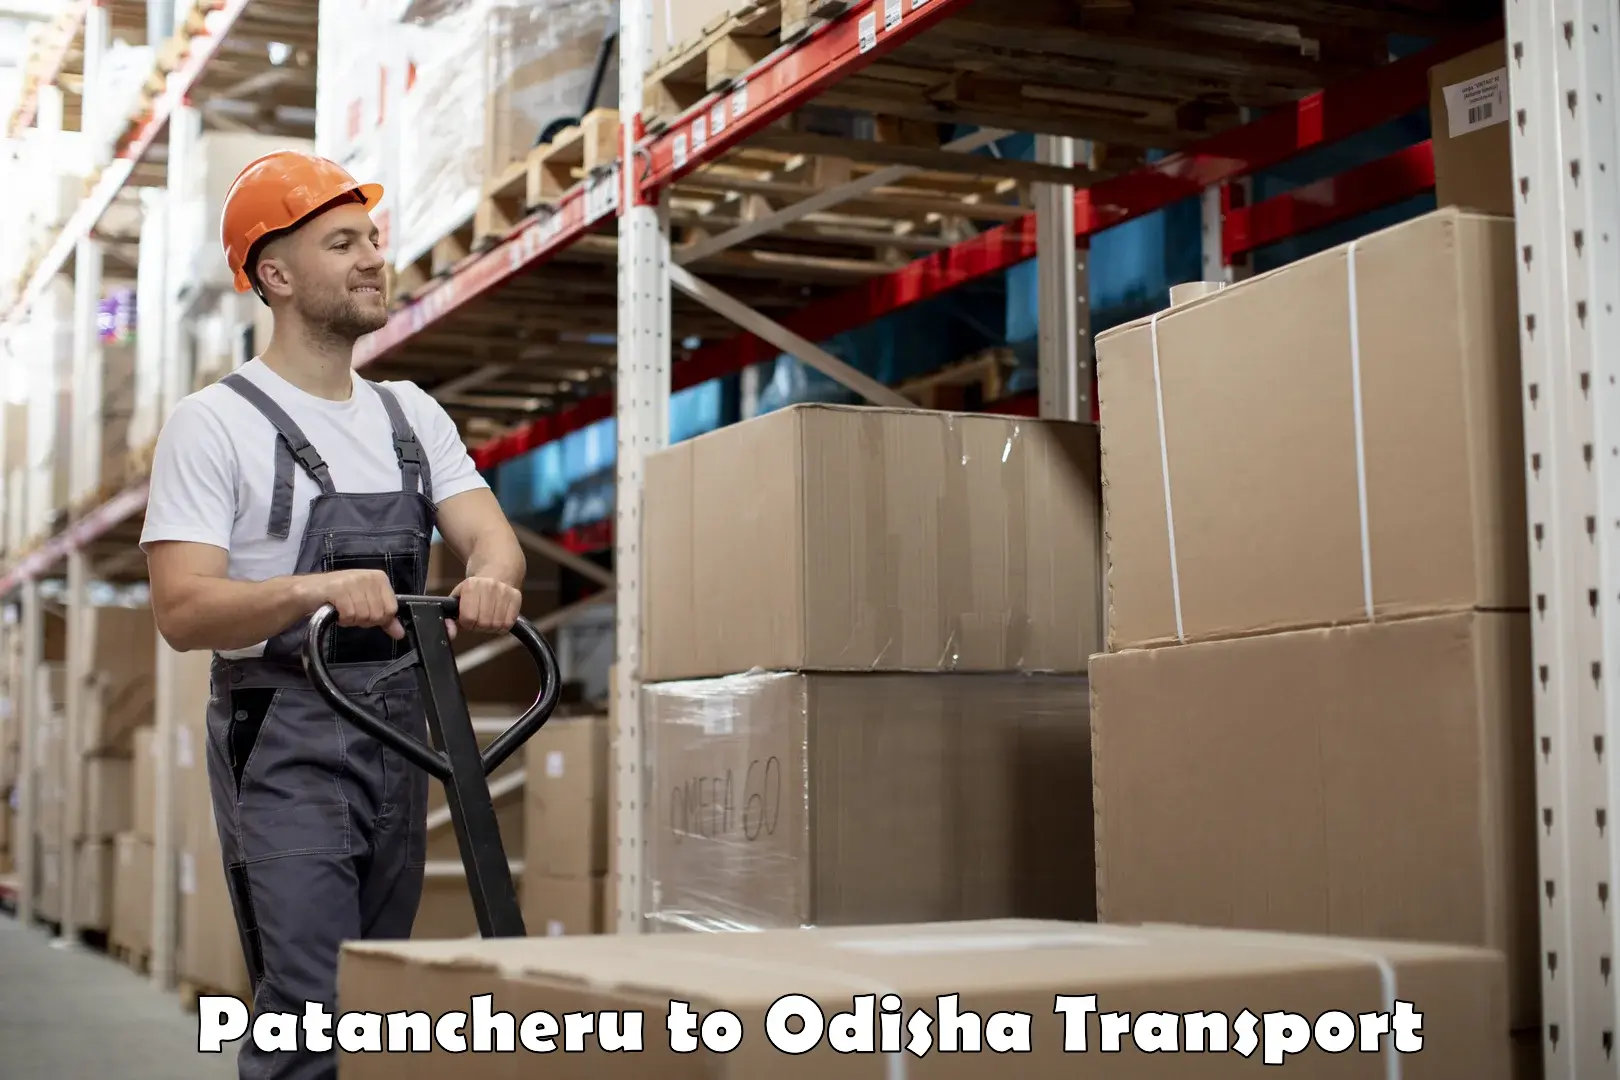 Furniture transport service in Patancheru to Odisha